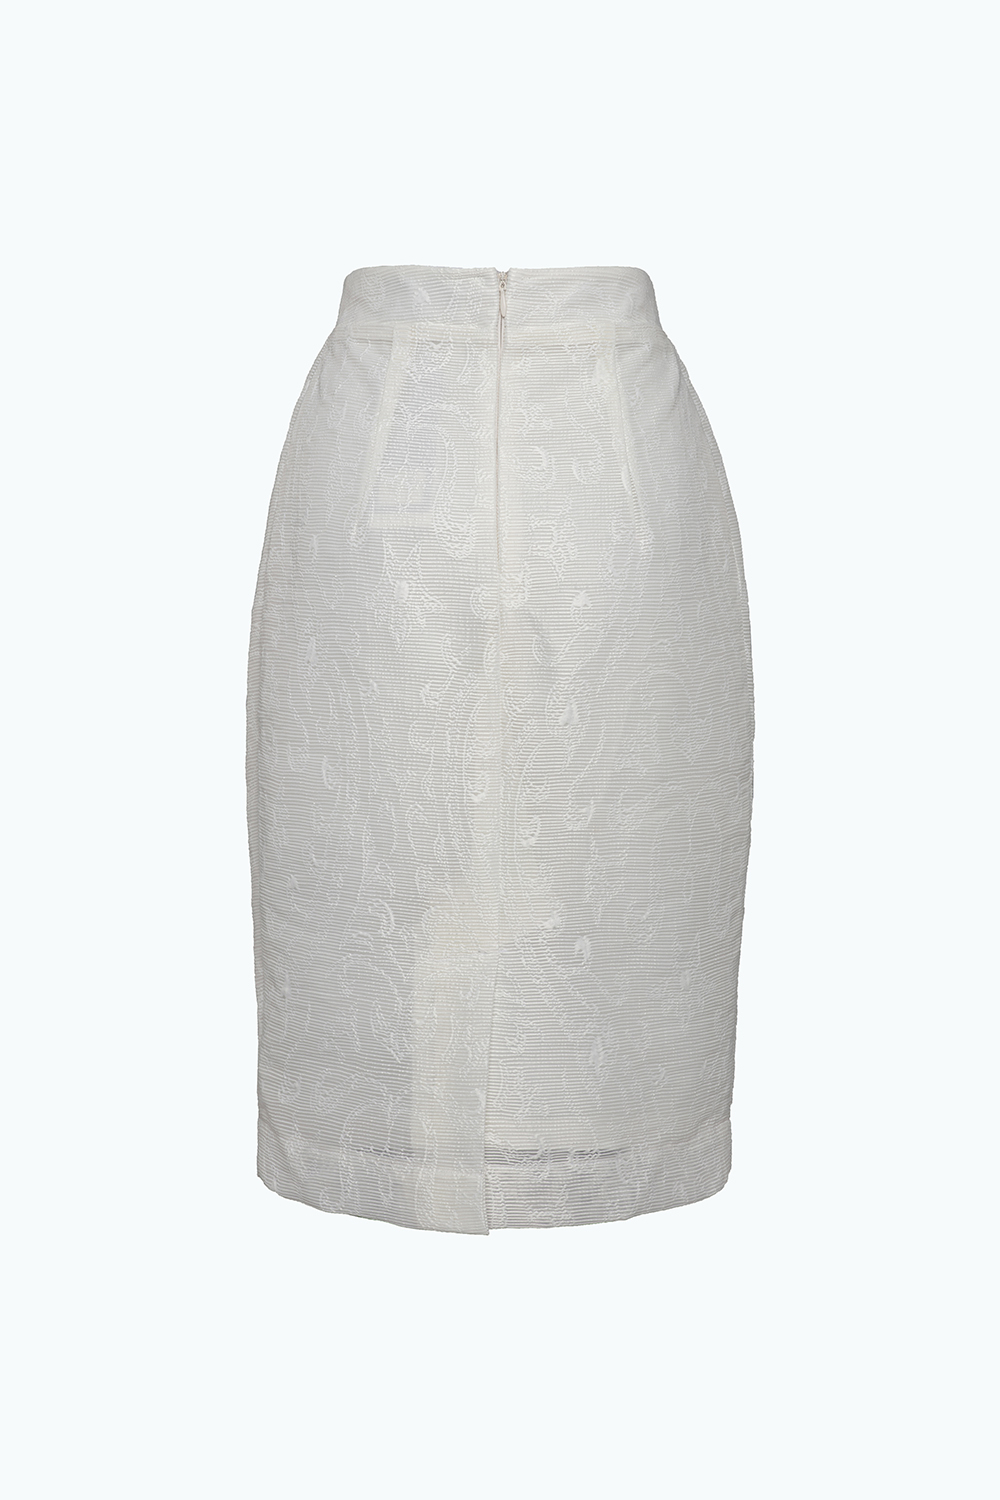 Chân váy bút chì màu trắng CV0318  Thời trang công sở KK Fashion 2019